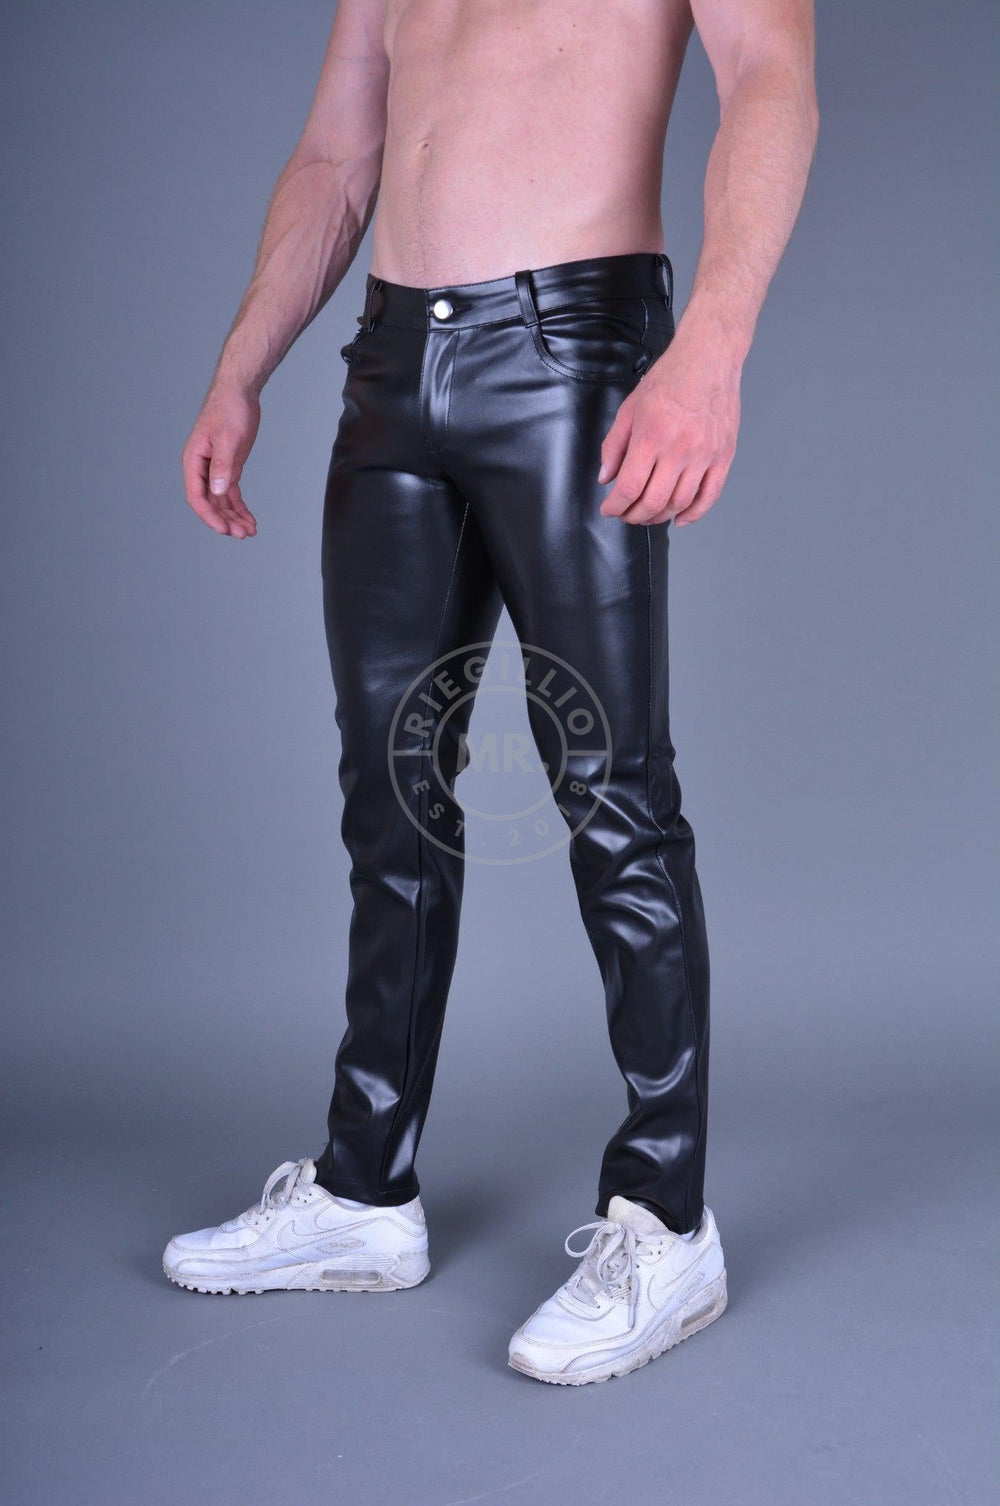 Vegan leather man fetishwear by MR. Riegillio